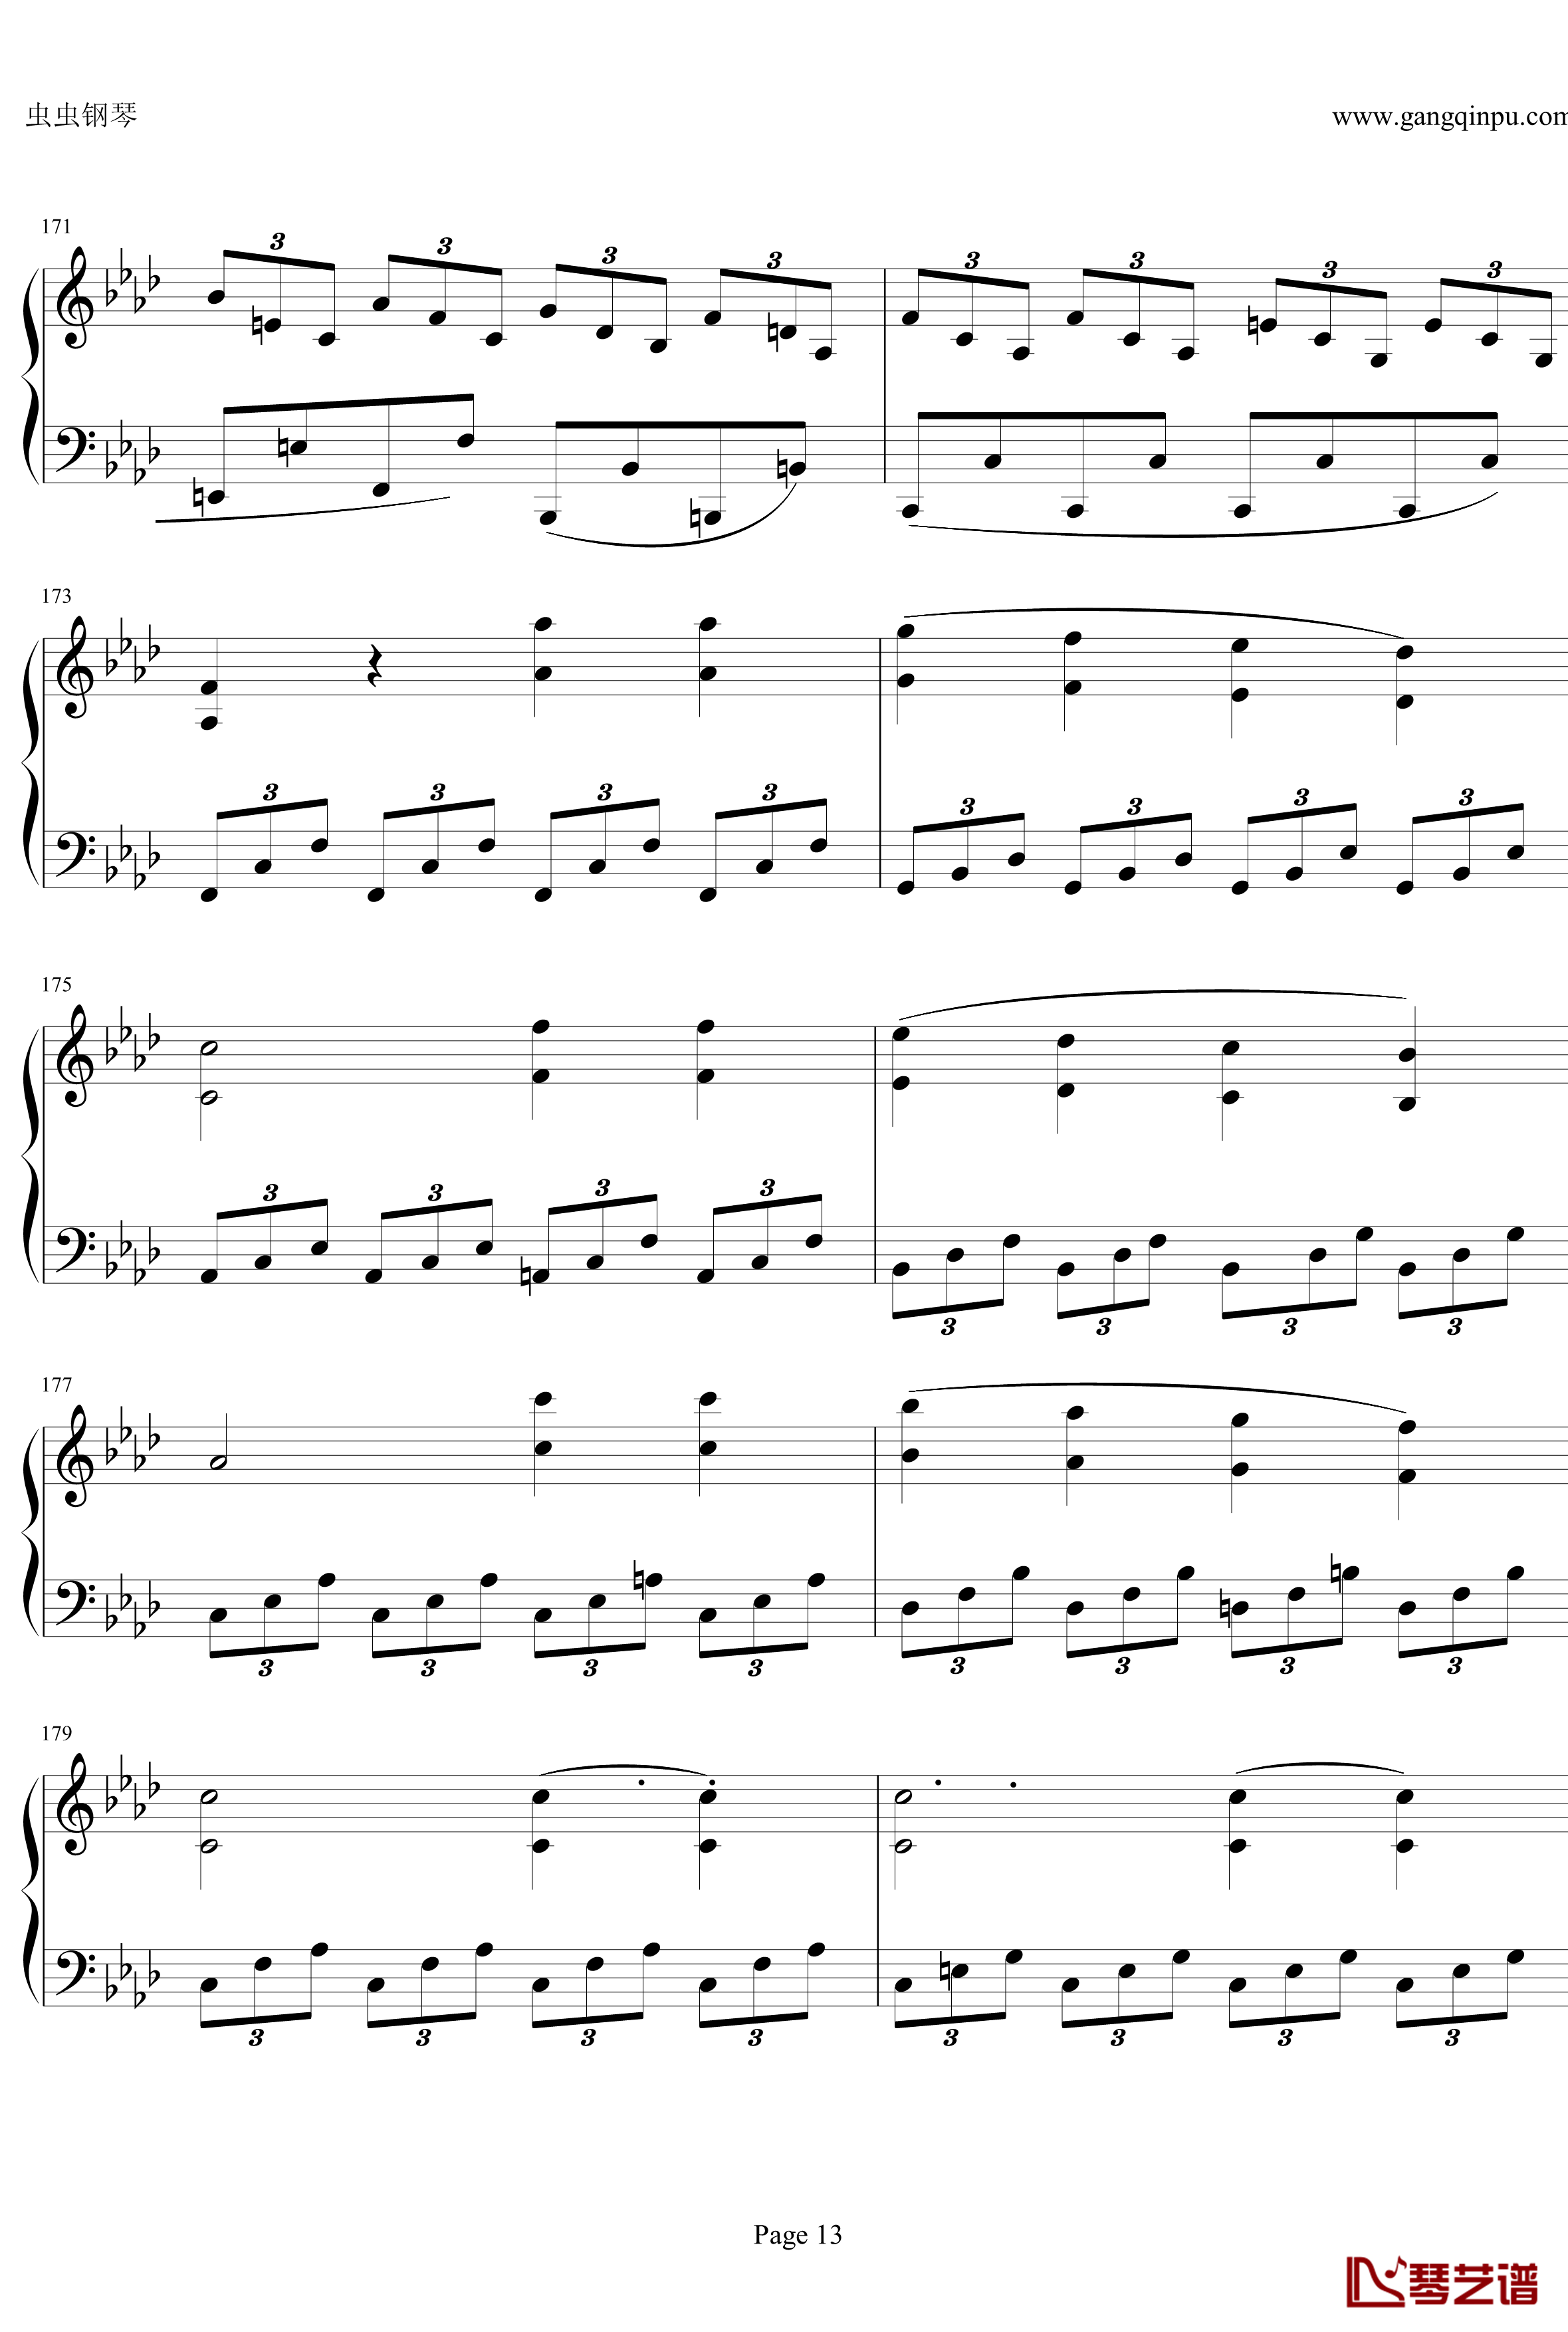 贝多芬第一钢琴奏鸣曲钢琴谱-作品2，第一号-贝多芬-beethoven13